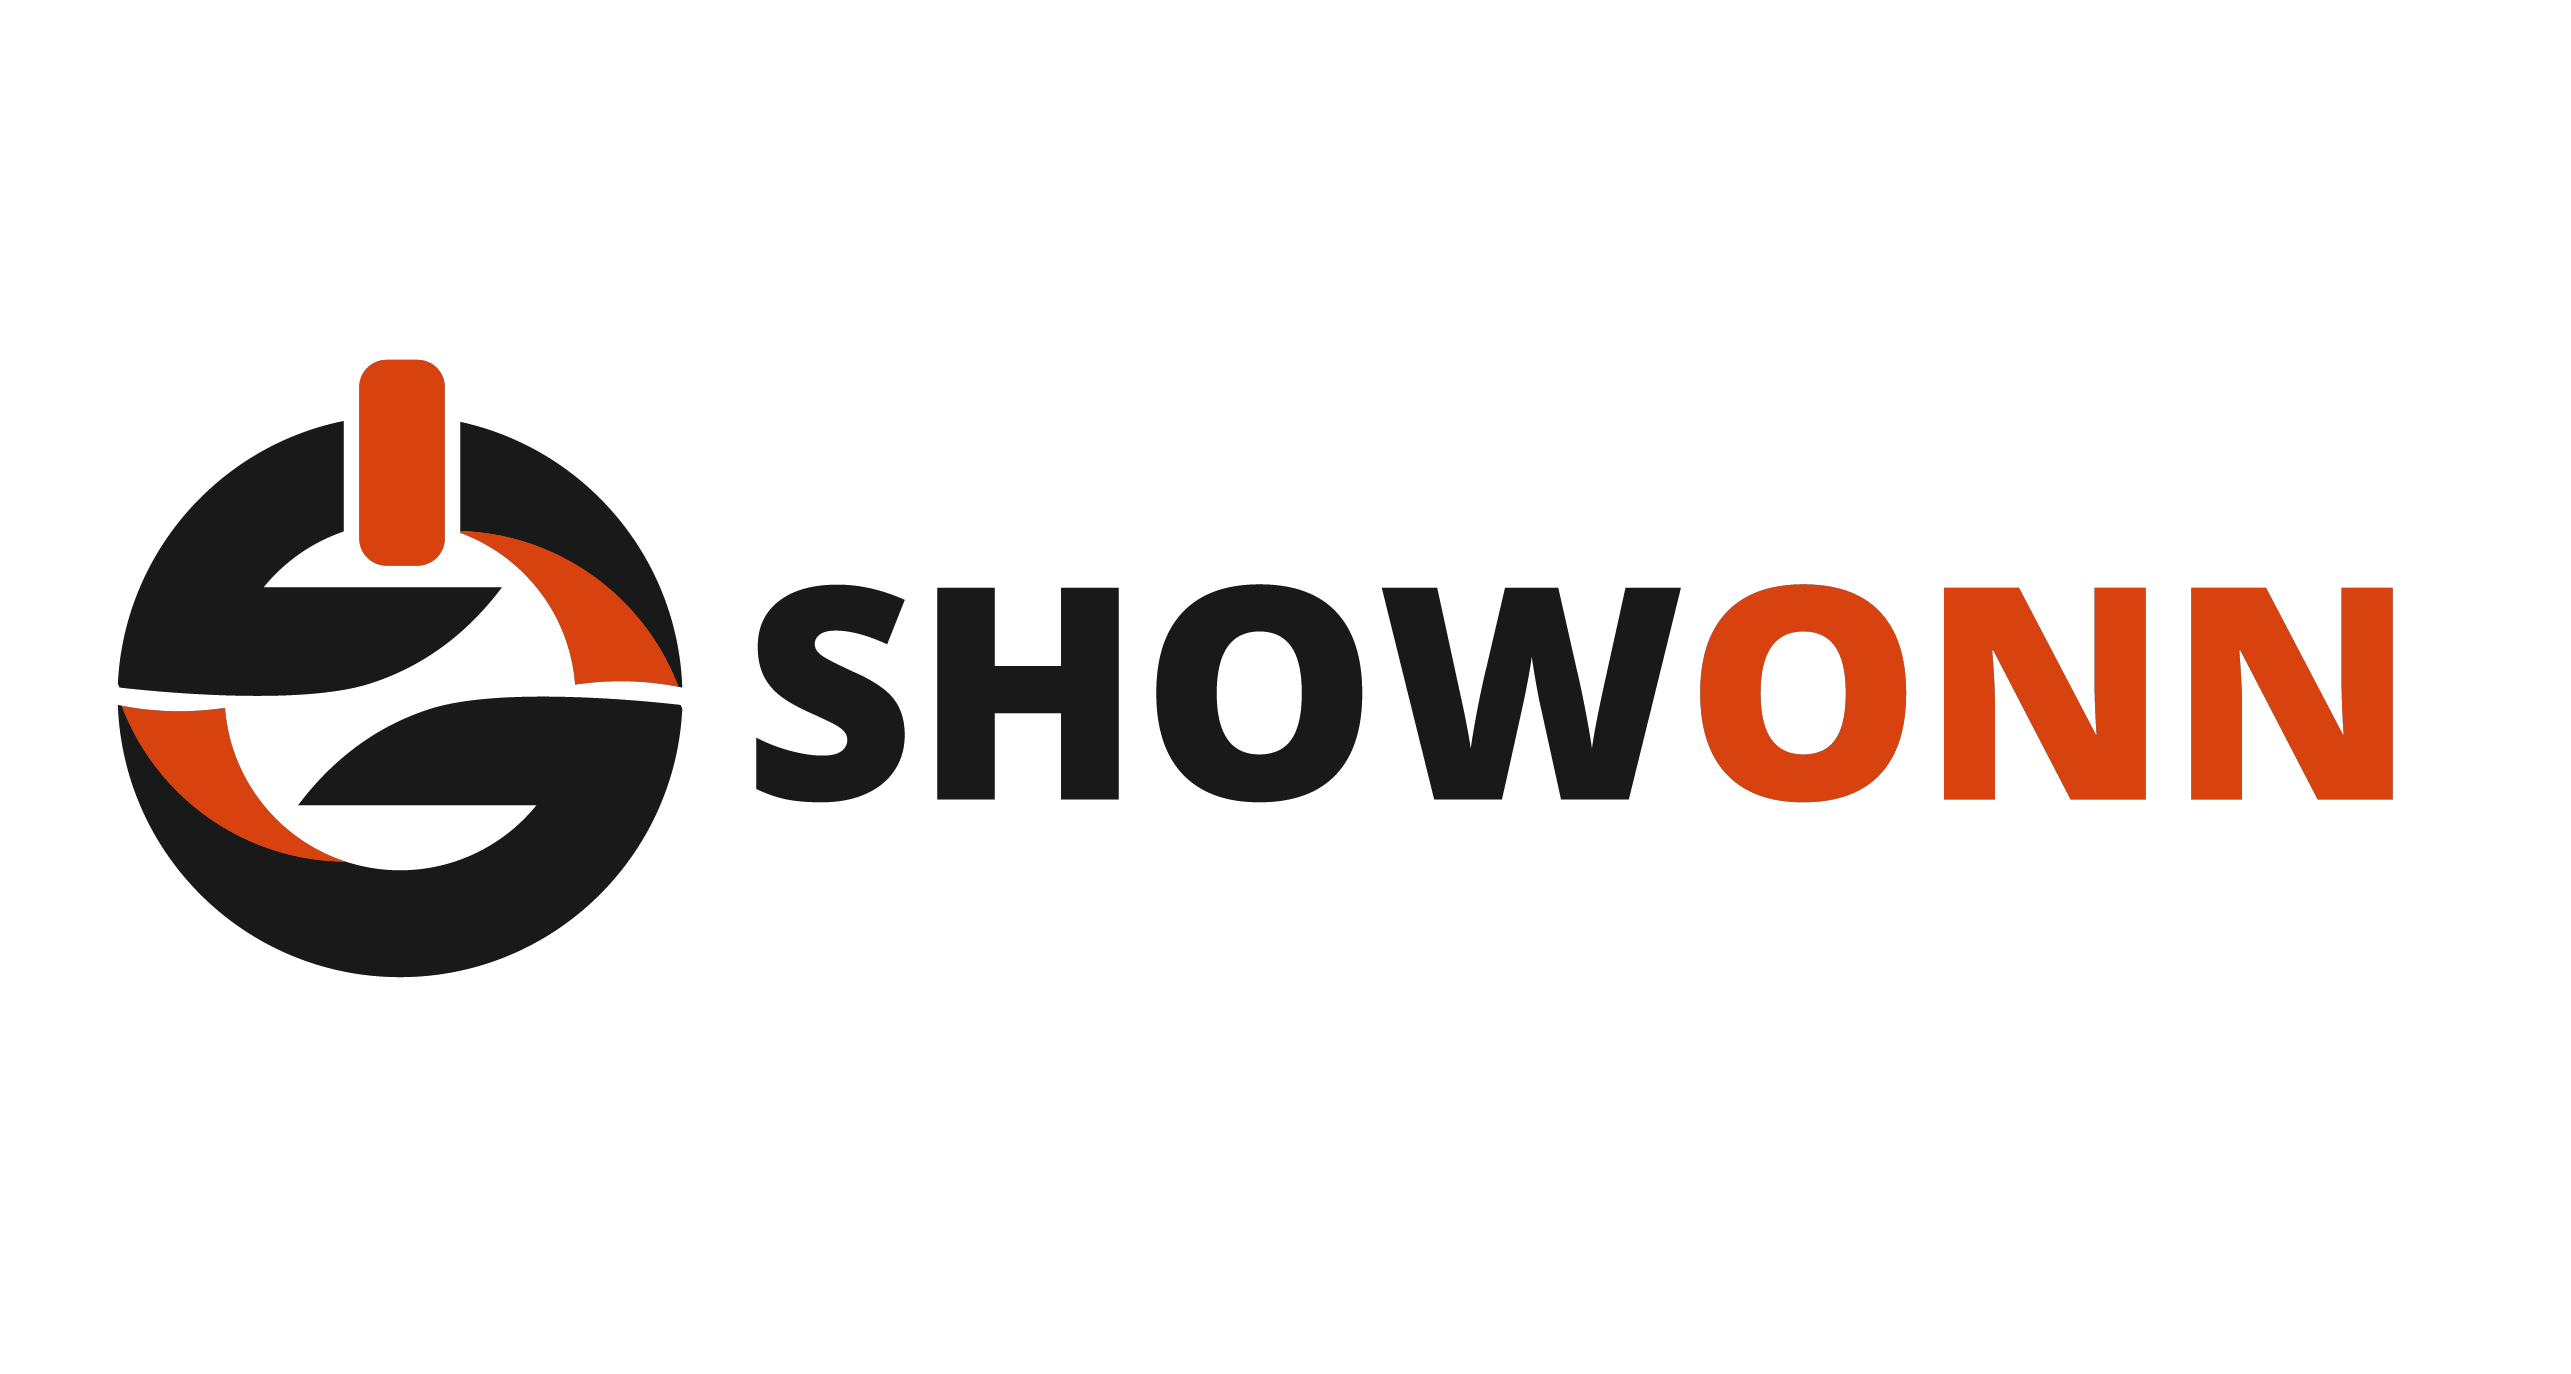 ShowONN.com